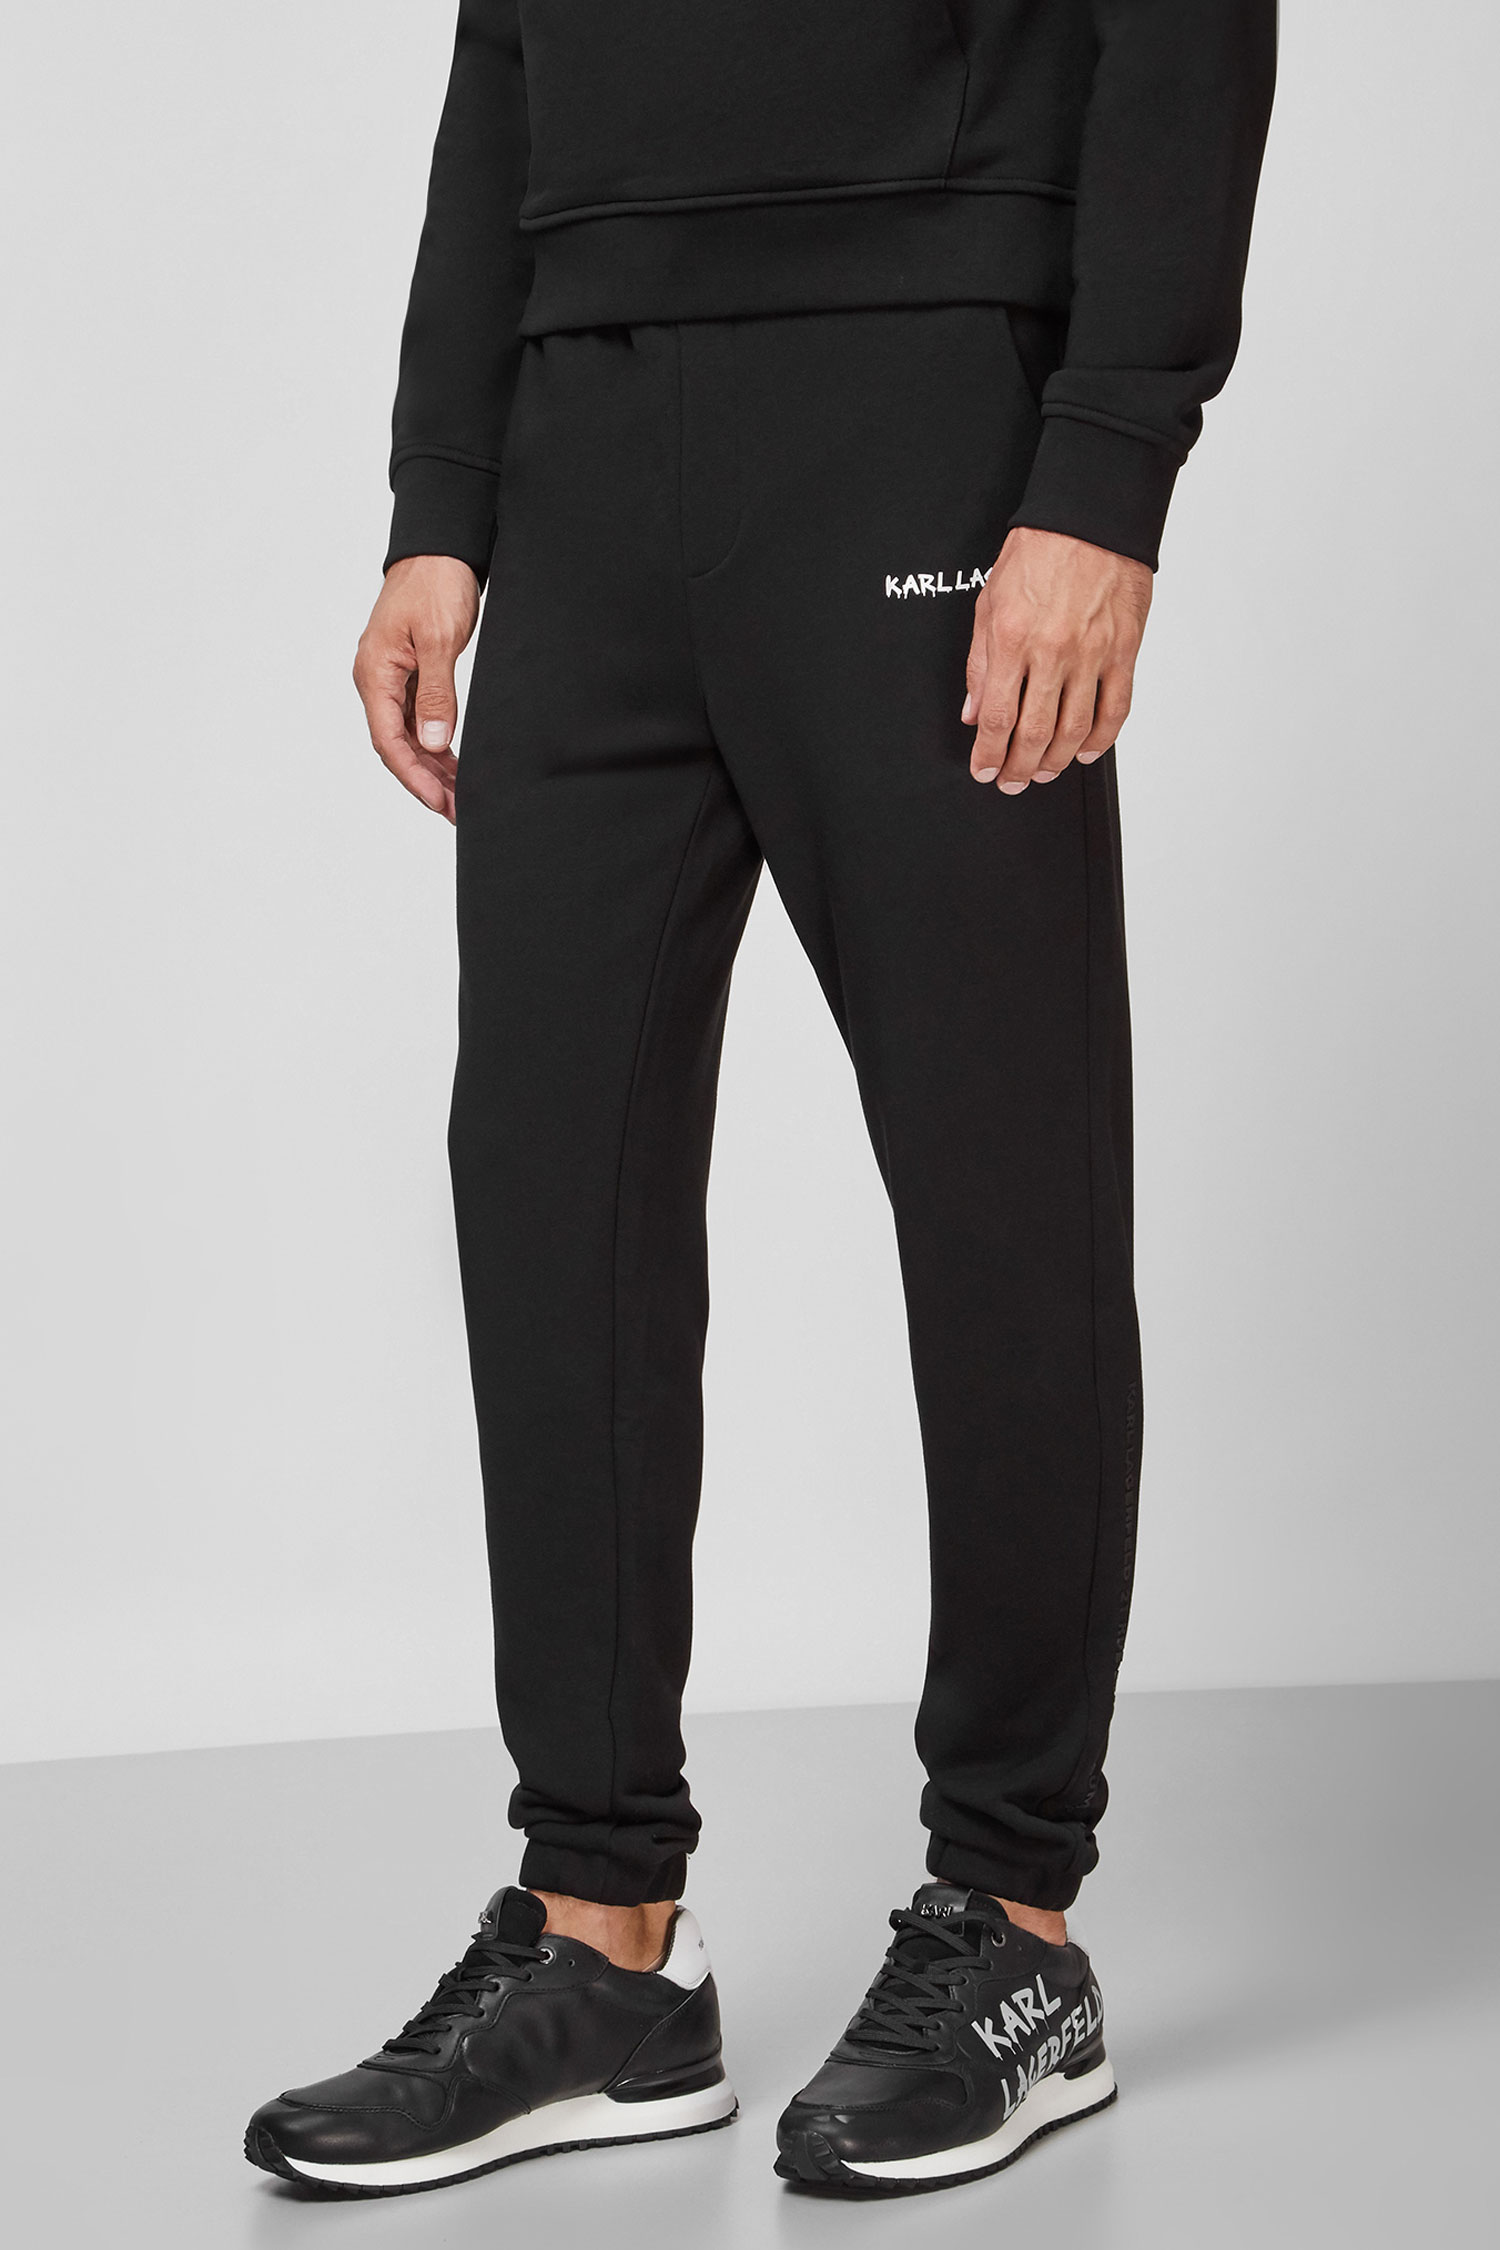 Чоловічі чорні спортивні штани Karl Lagerfeld 512900.705022;990